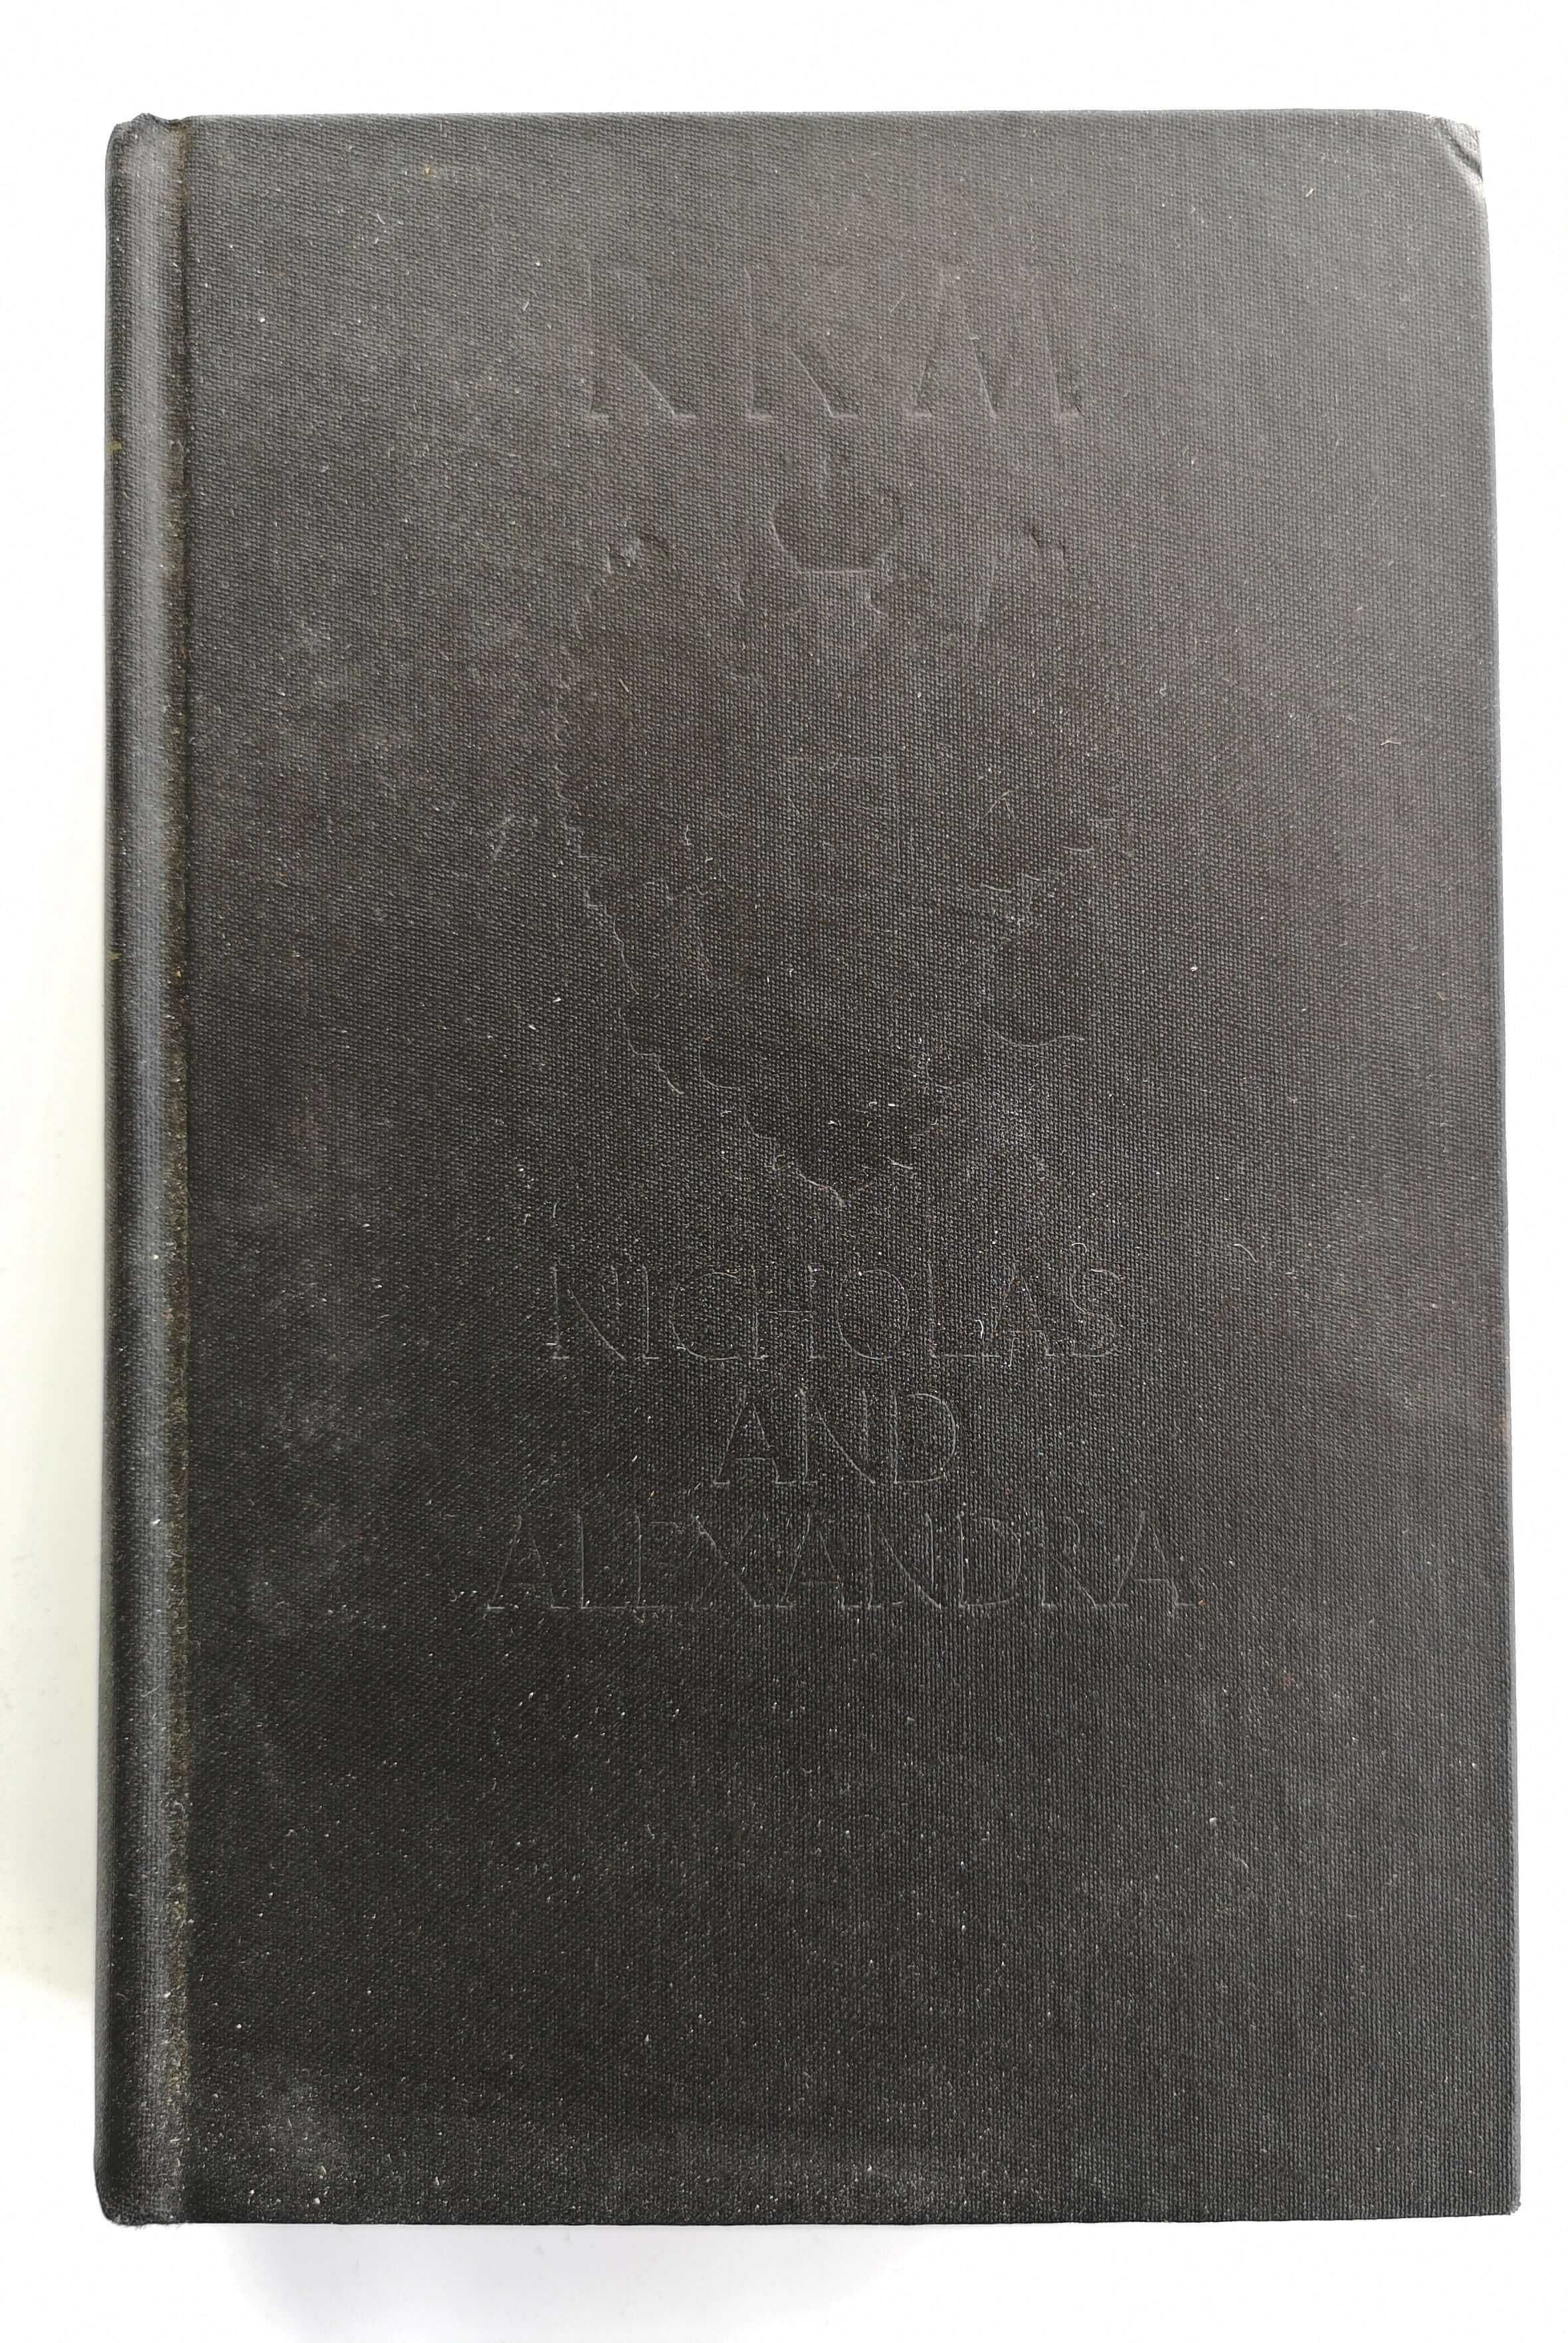 Książka angielska NICHOLAS and ALEXANDRA by Massie (8)